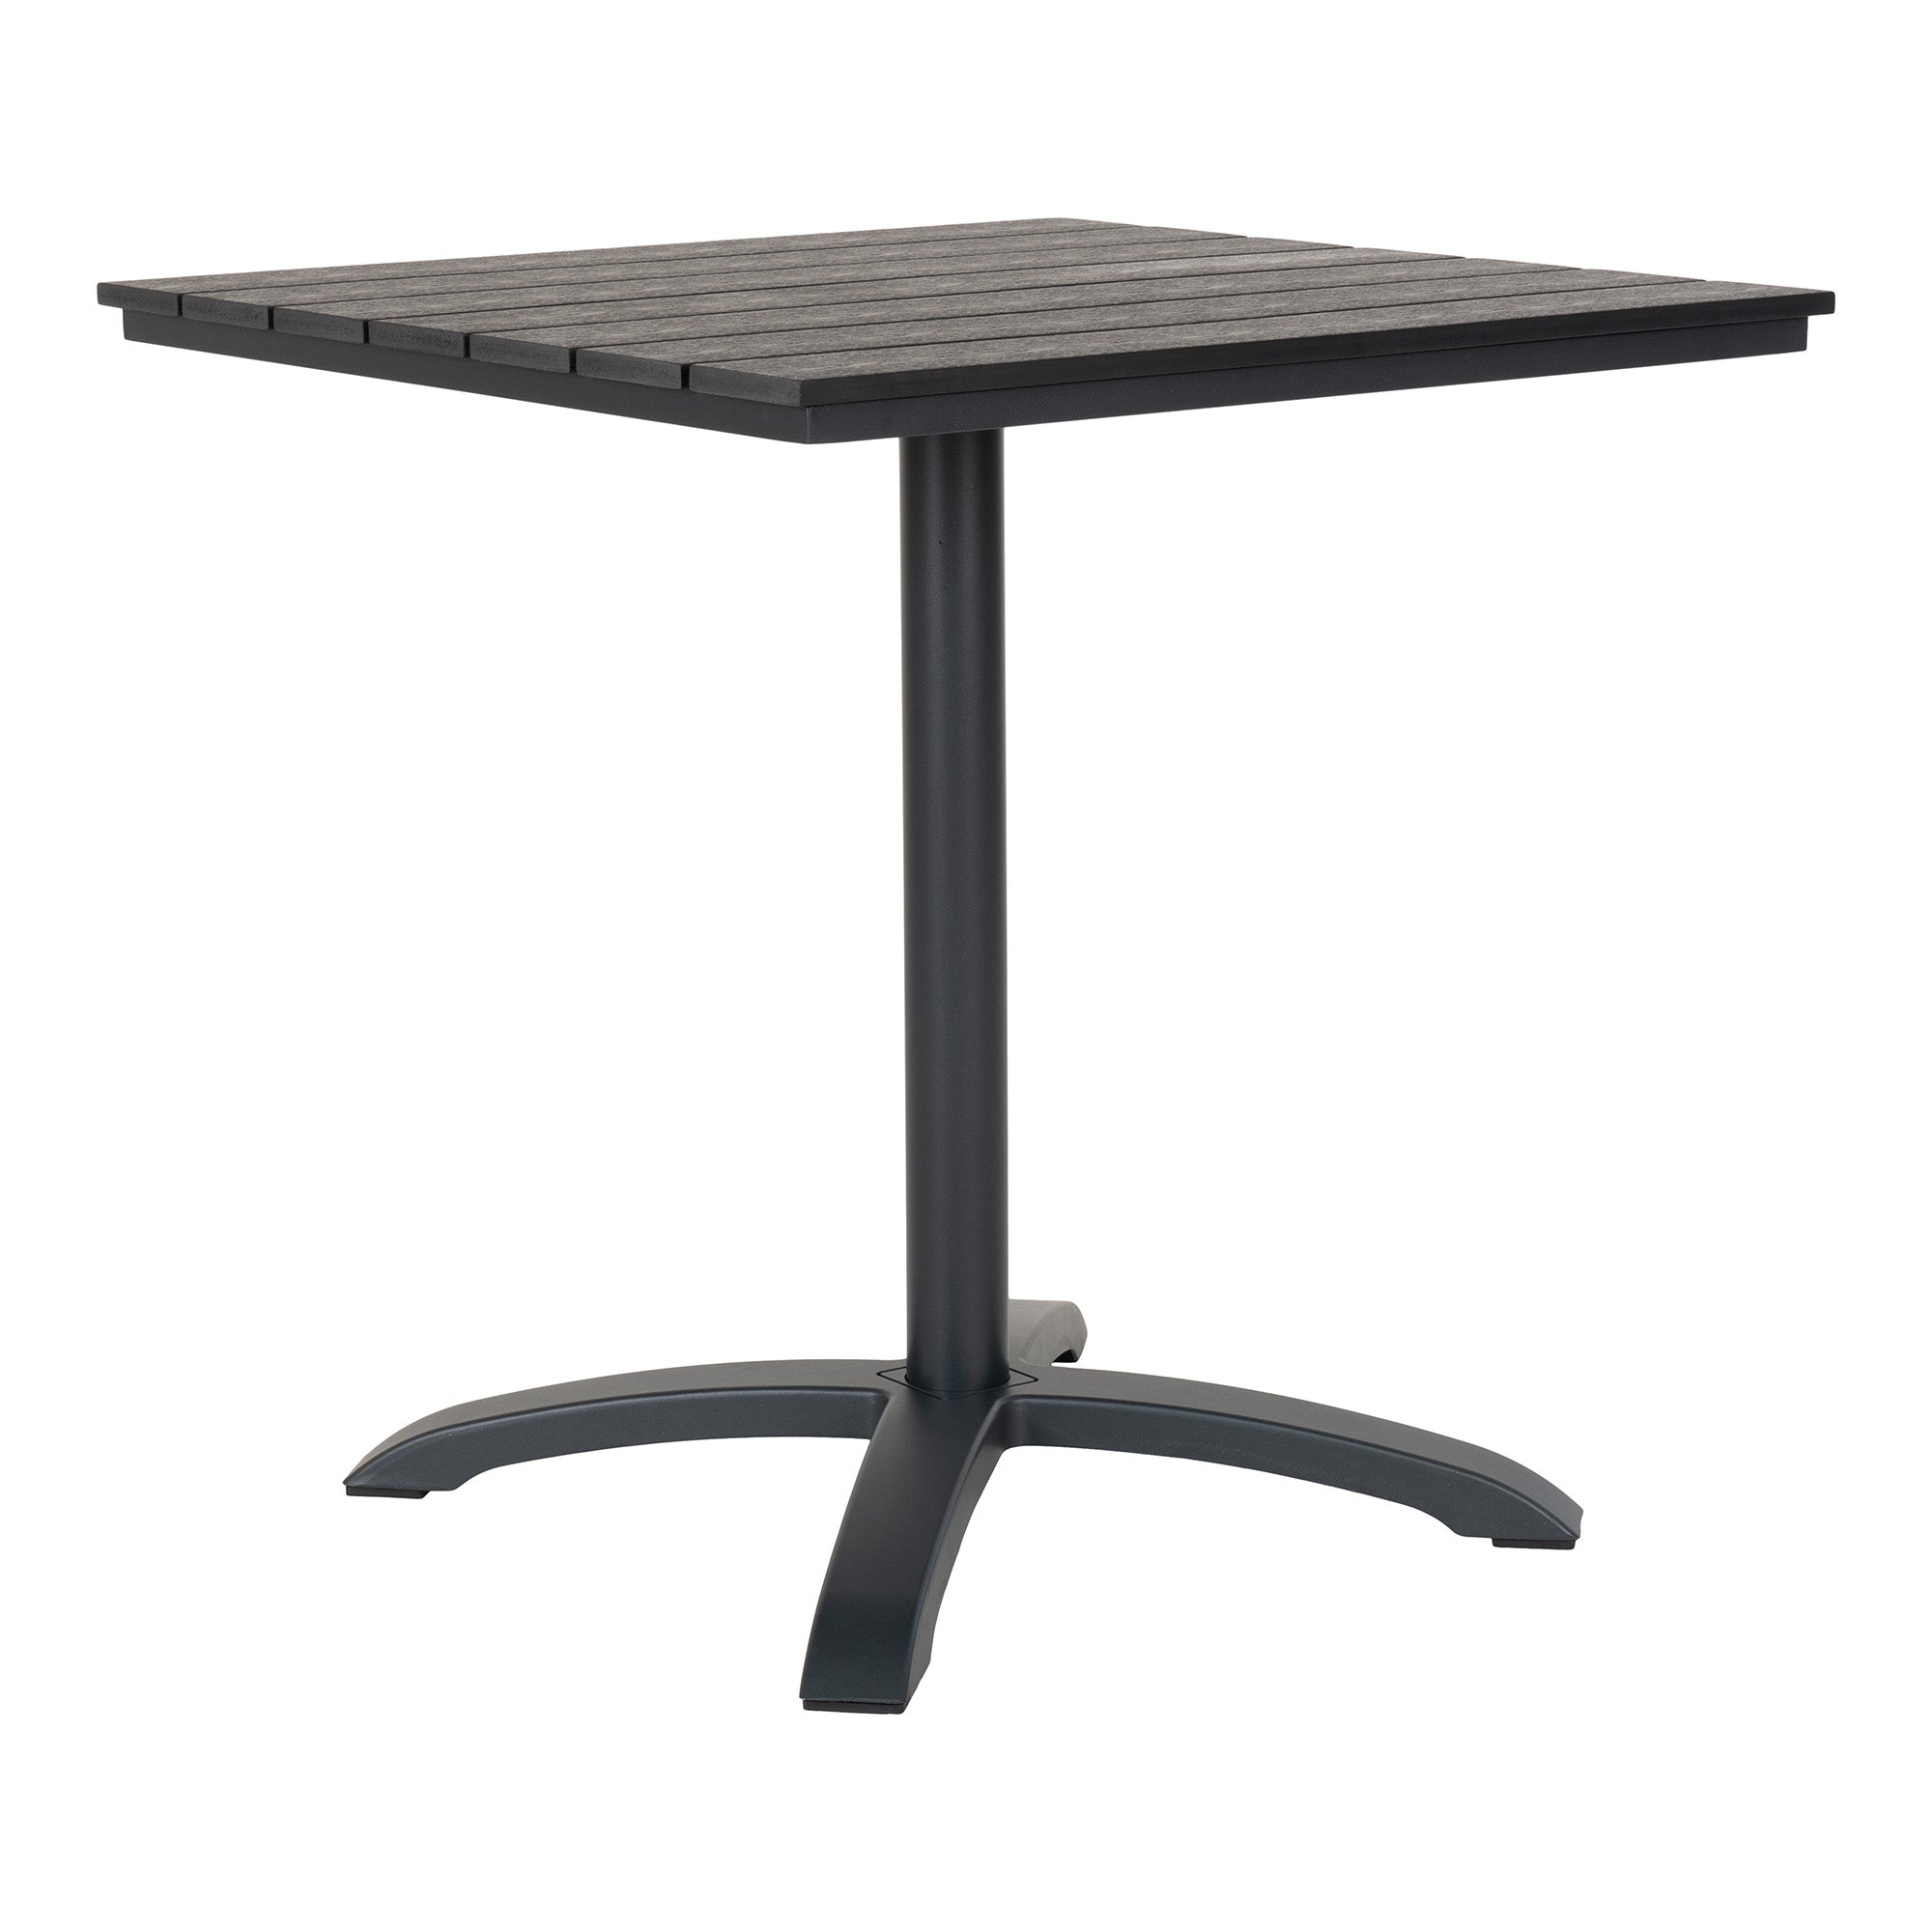 Billede af Chicago Cafébord - Cafébord med bordplade i grå nonwood og sorte ben, 70x70x72 cm